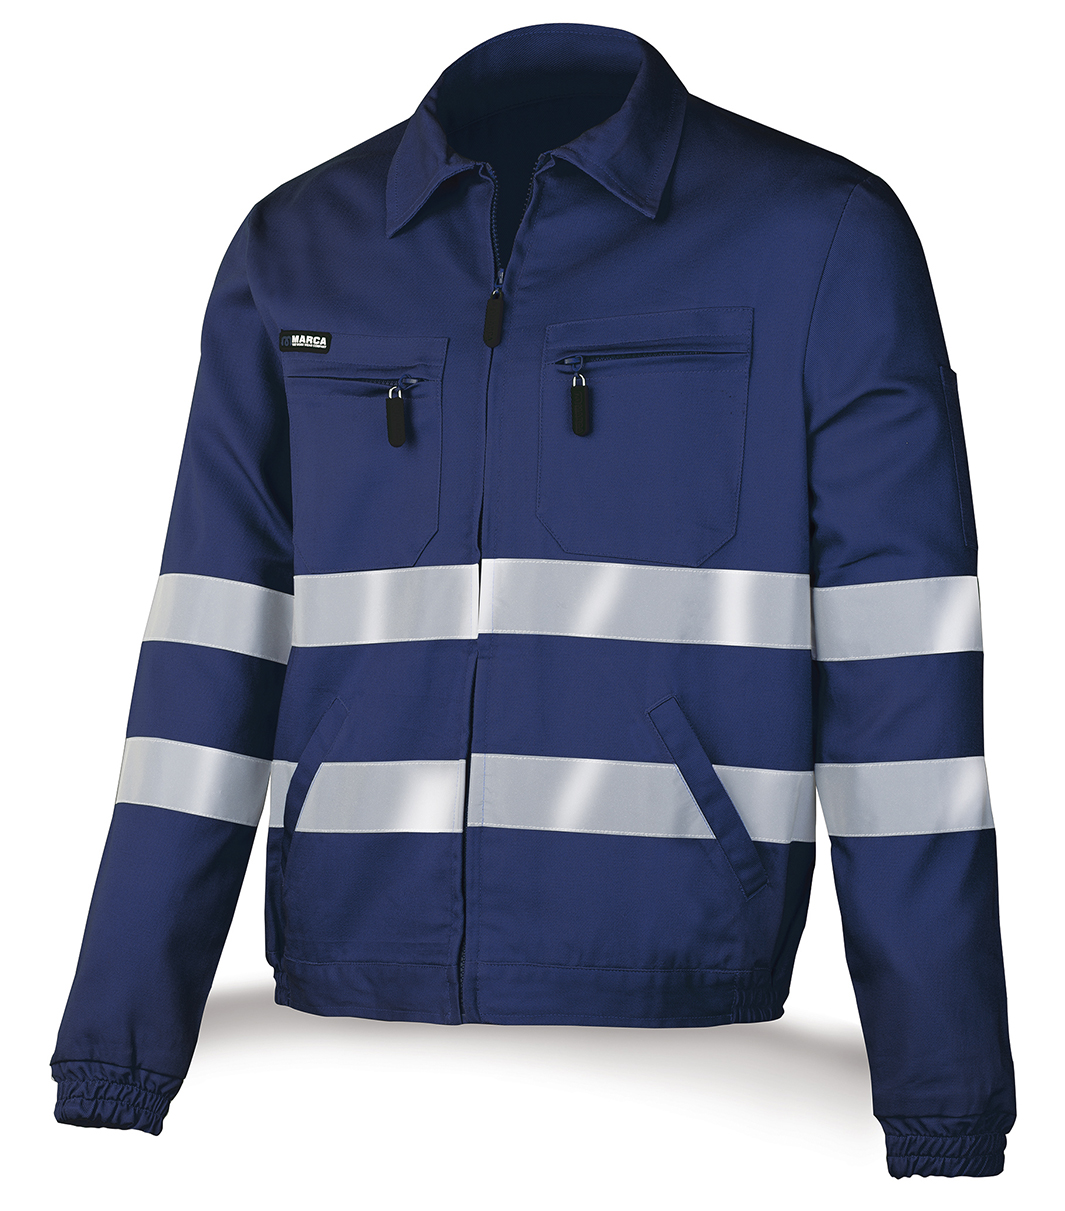 488-CACR Top Vestuario Laboral Top Series Casaco de algodão azul marinho com riscas reflectoras 245 g.